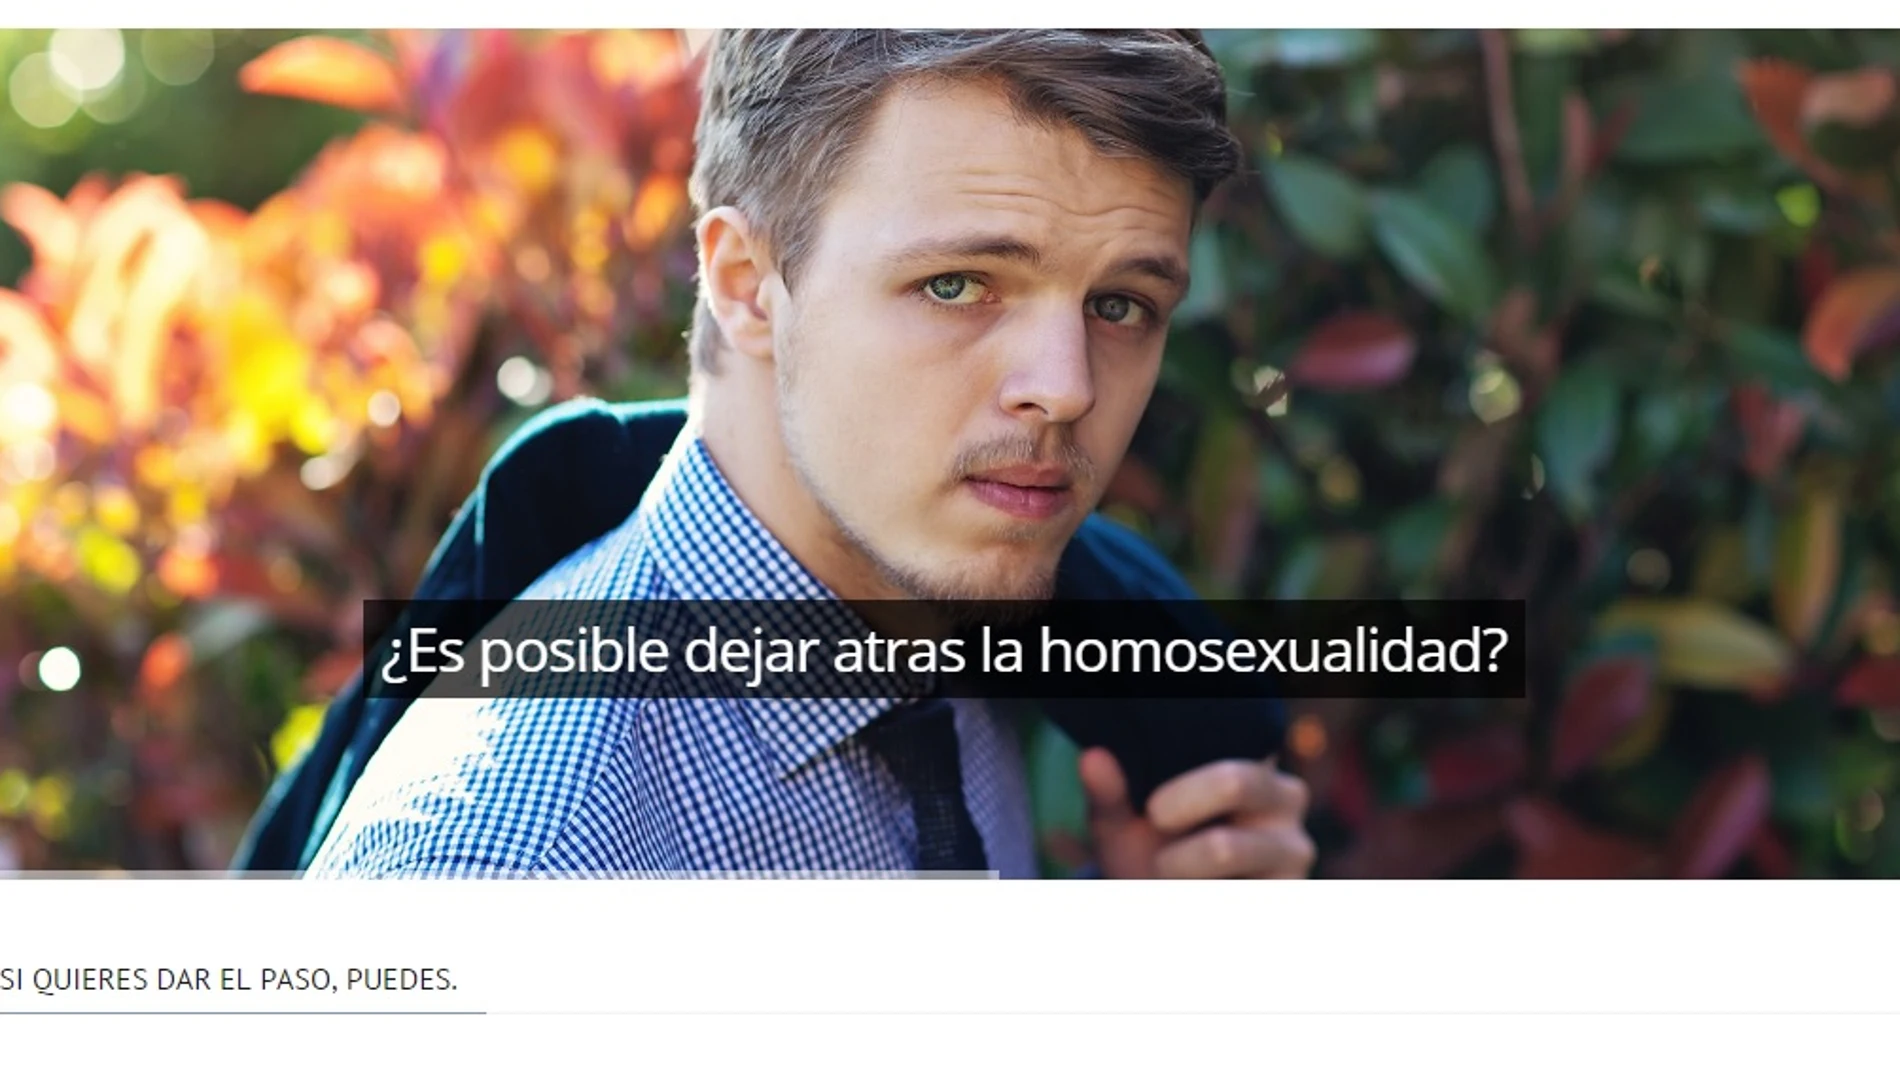 Imagen de la web que ofrece curar la homosexualidad